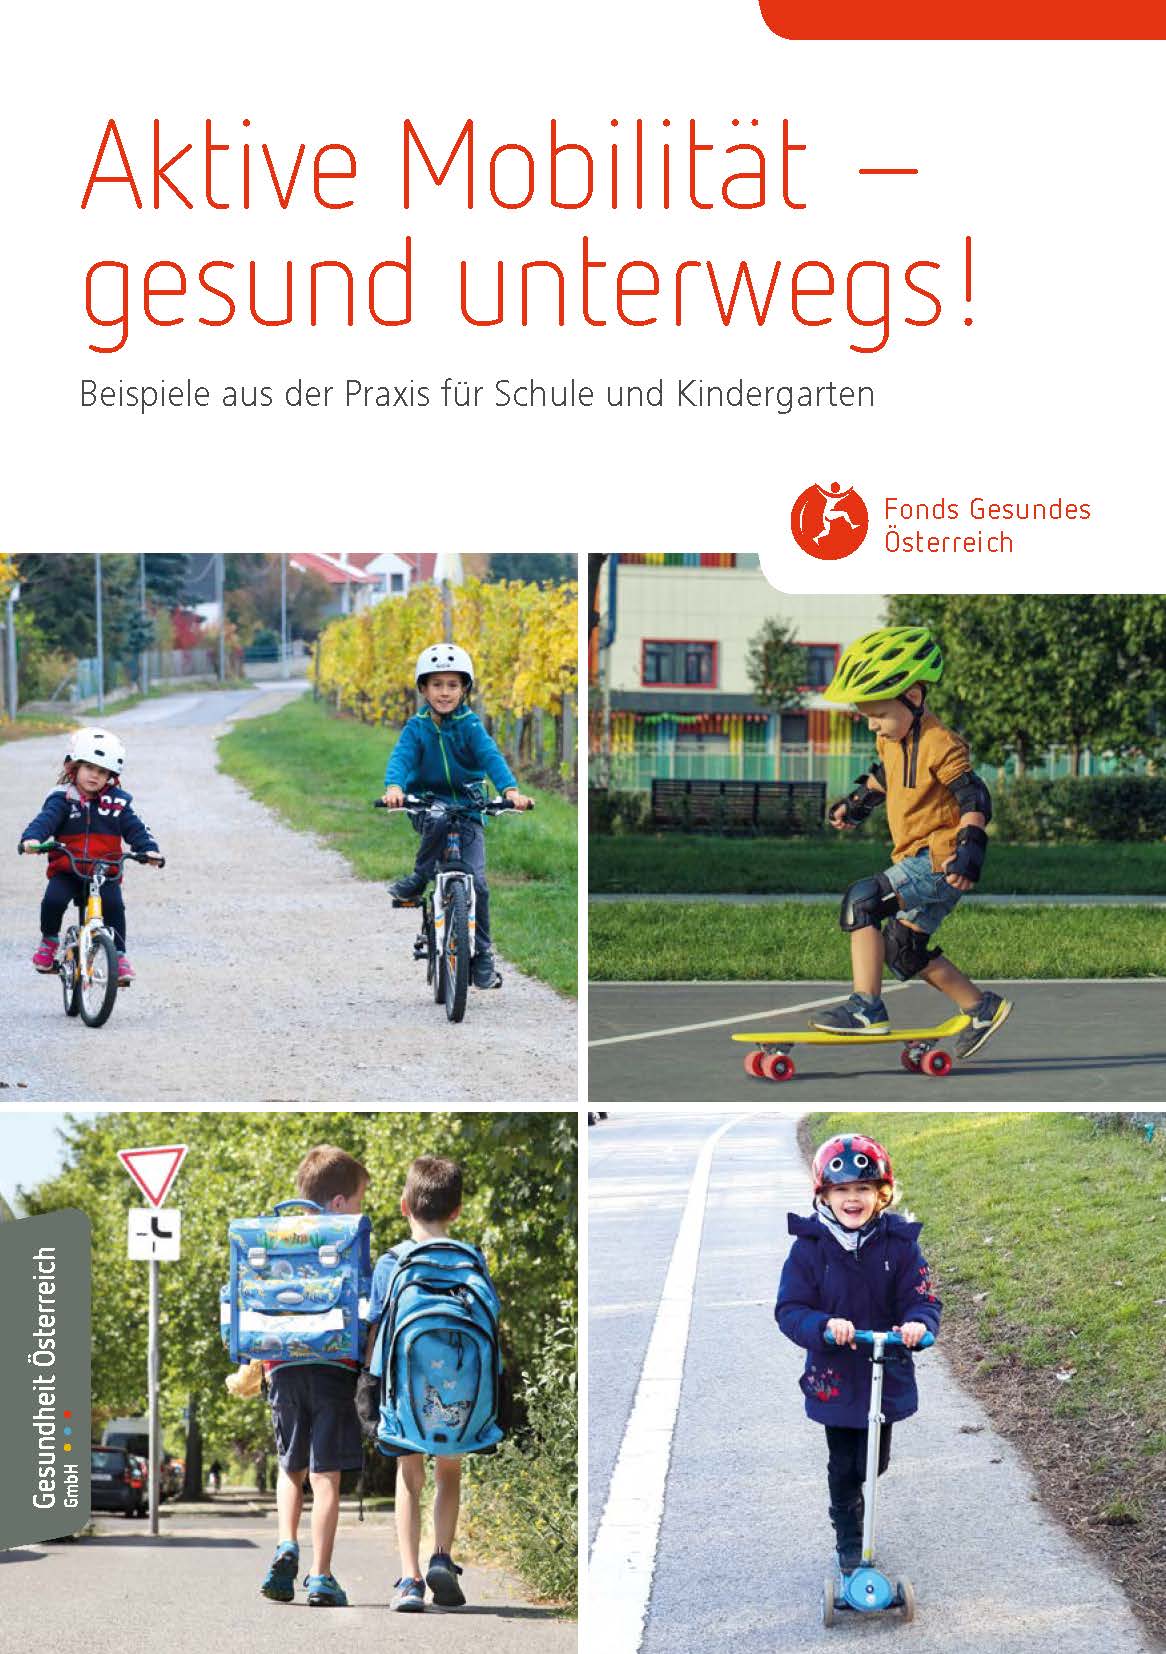 Titelseite Broschüre "Aktive Mobilität - gesund unterwegs! Beispiele aus der Praxis für Schule und Kindergarten"